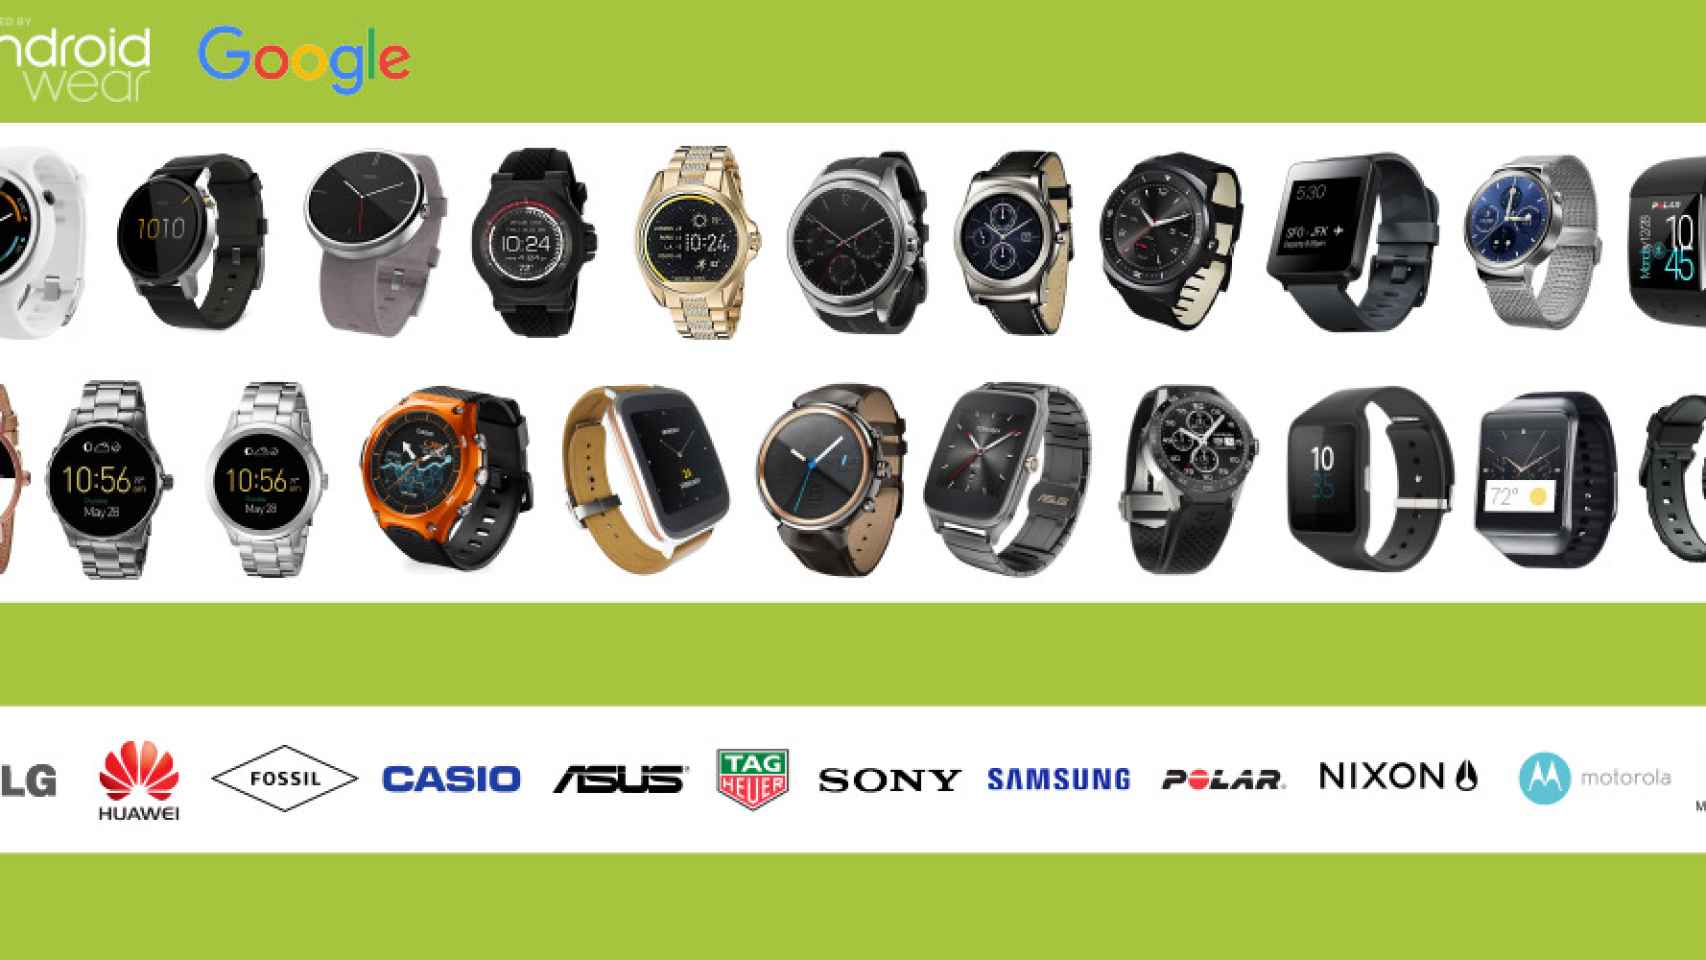 Comparativa Android Wear: todos los relojes inteligentes en una infografía